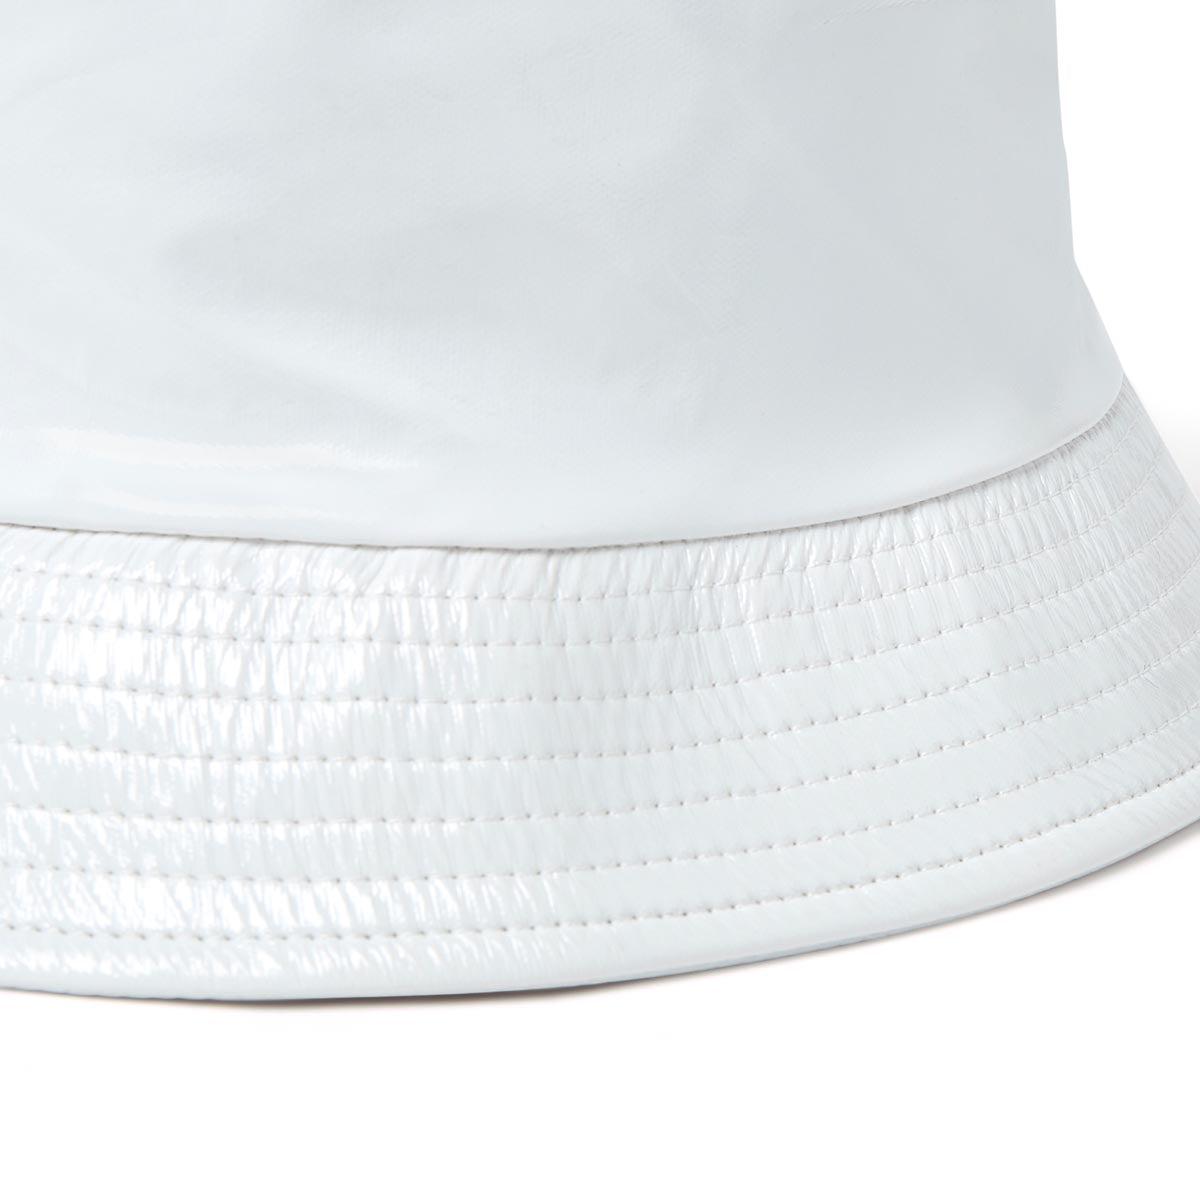 Chapeau de pluie - bob en vinyle blanc